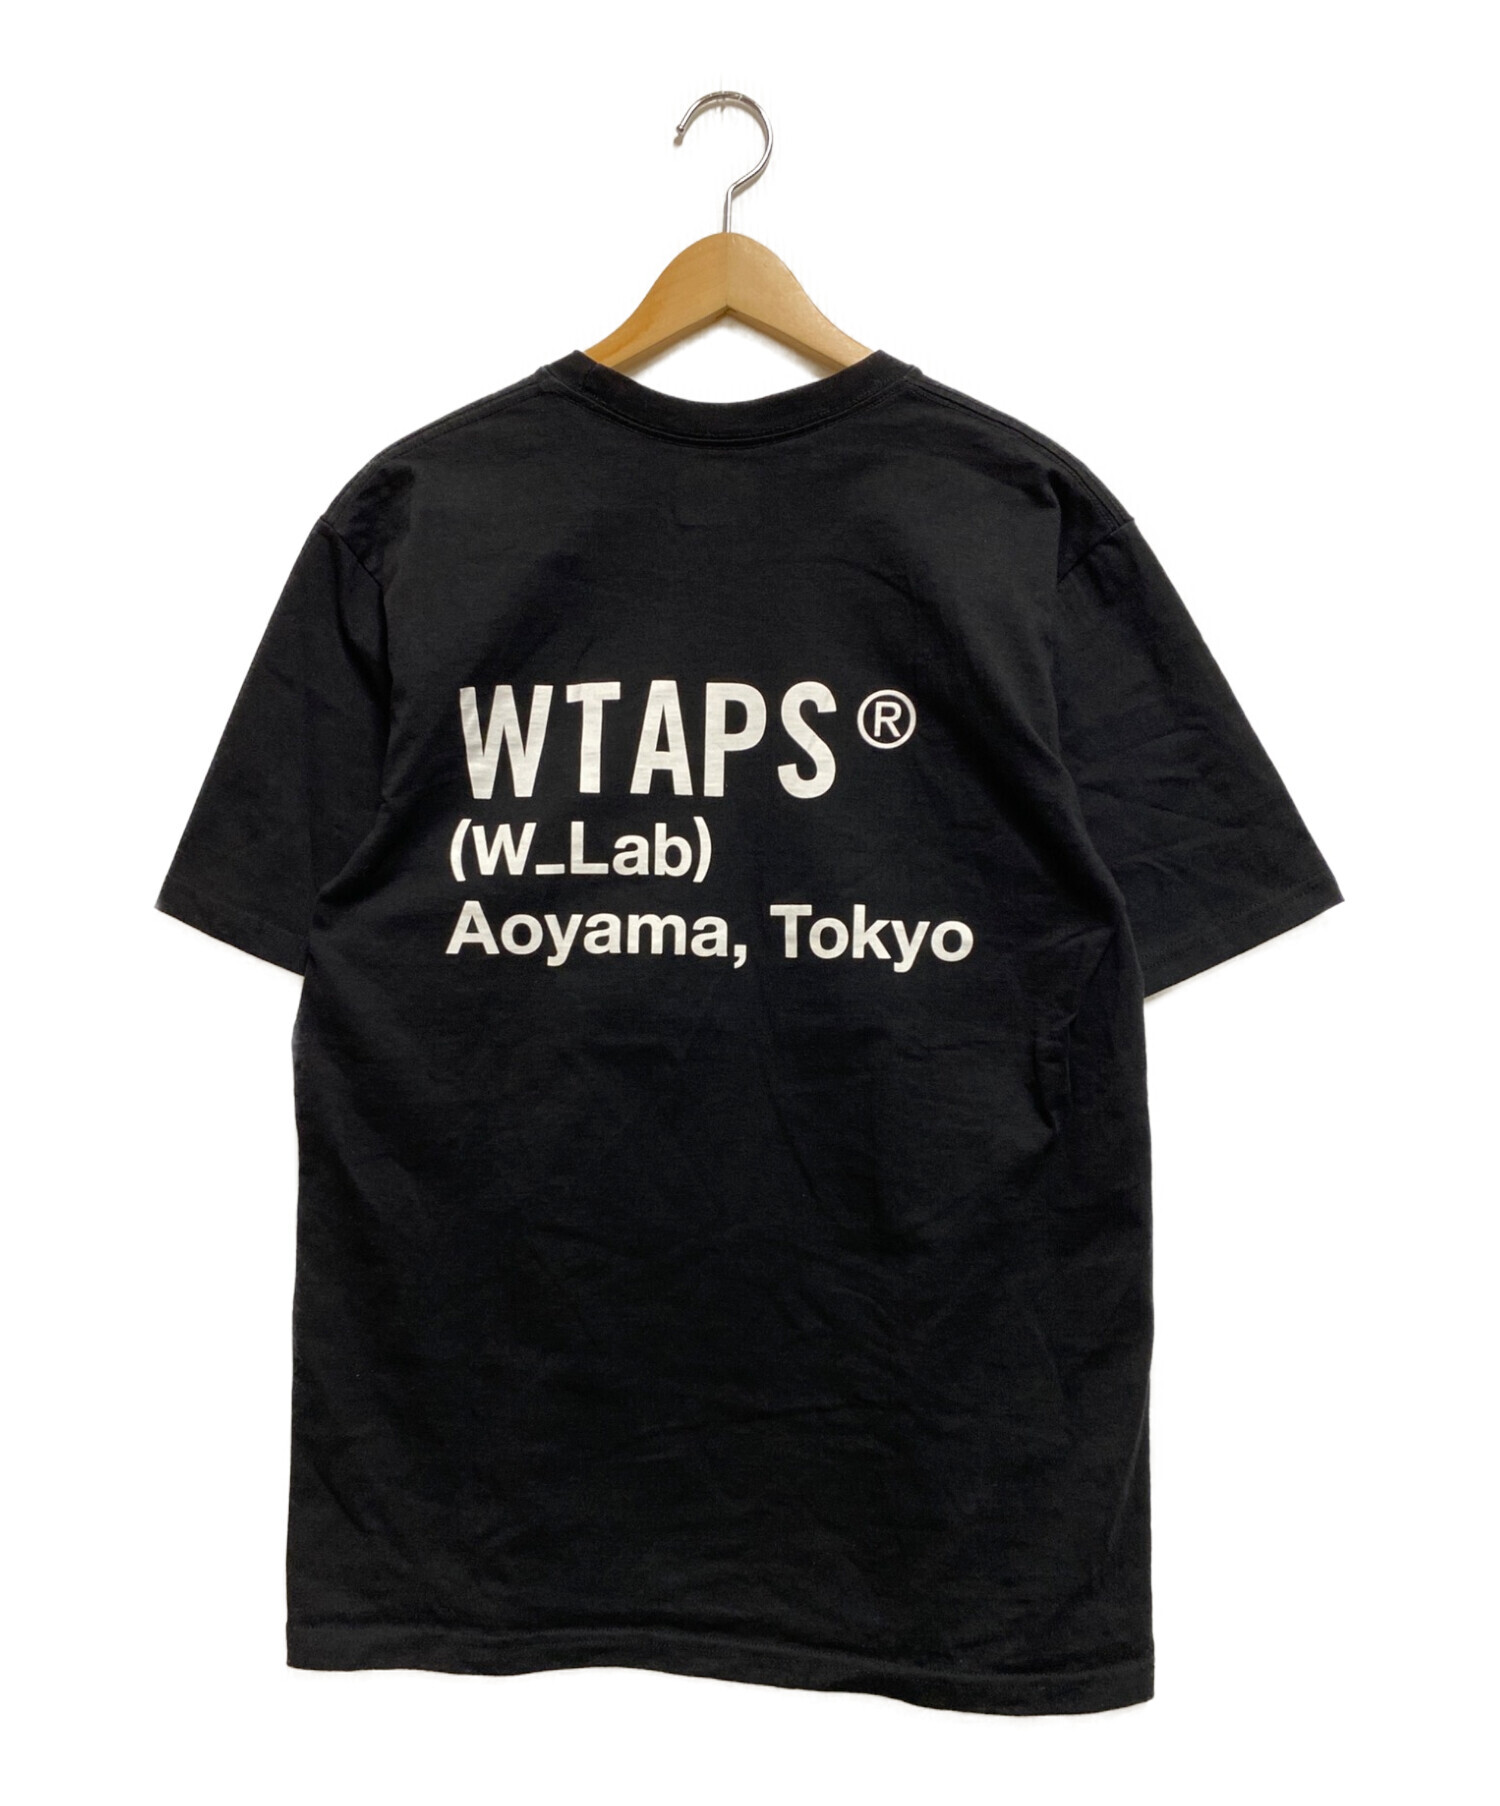 ダブルタップス tシャツ タグ付き Mサイズ 02 ブラック - トップス